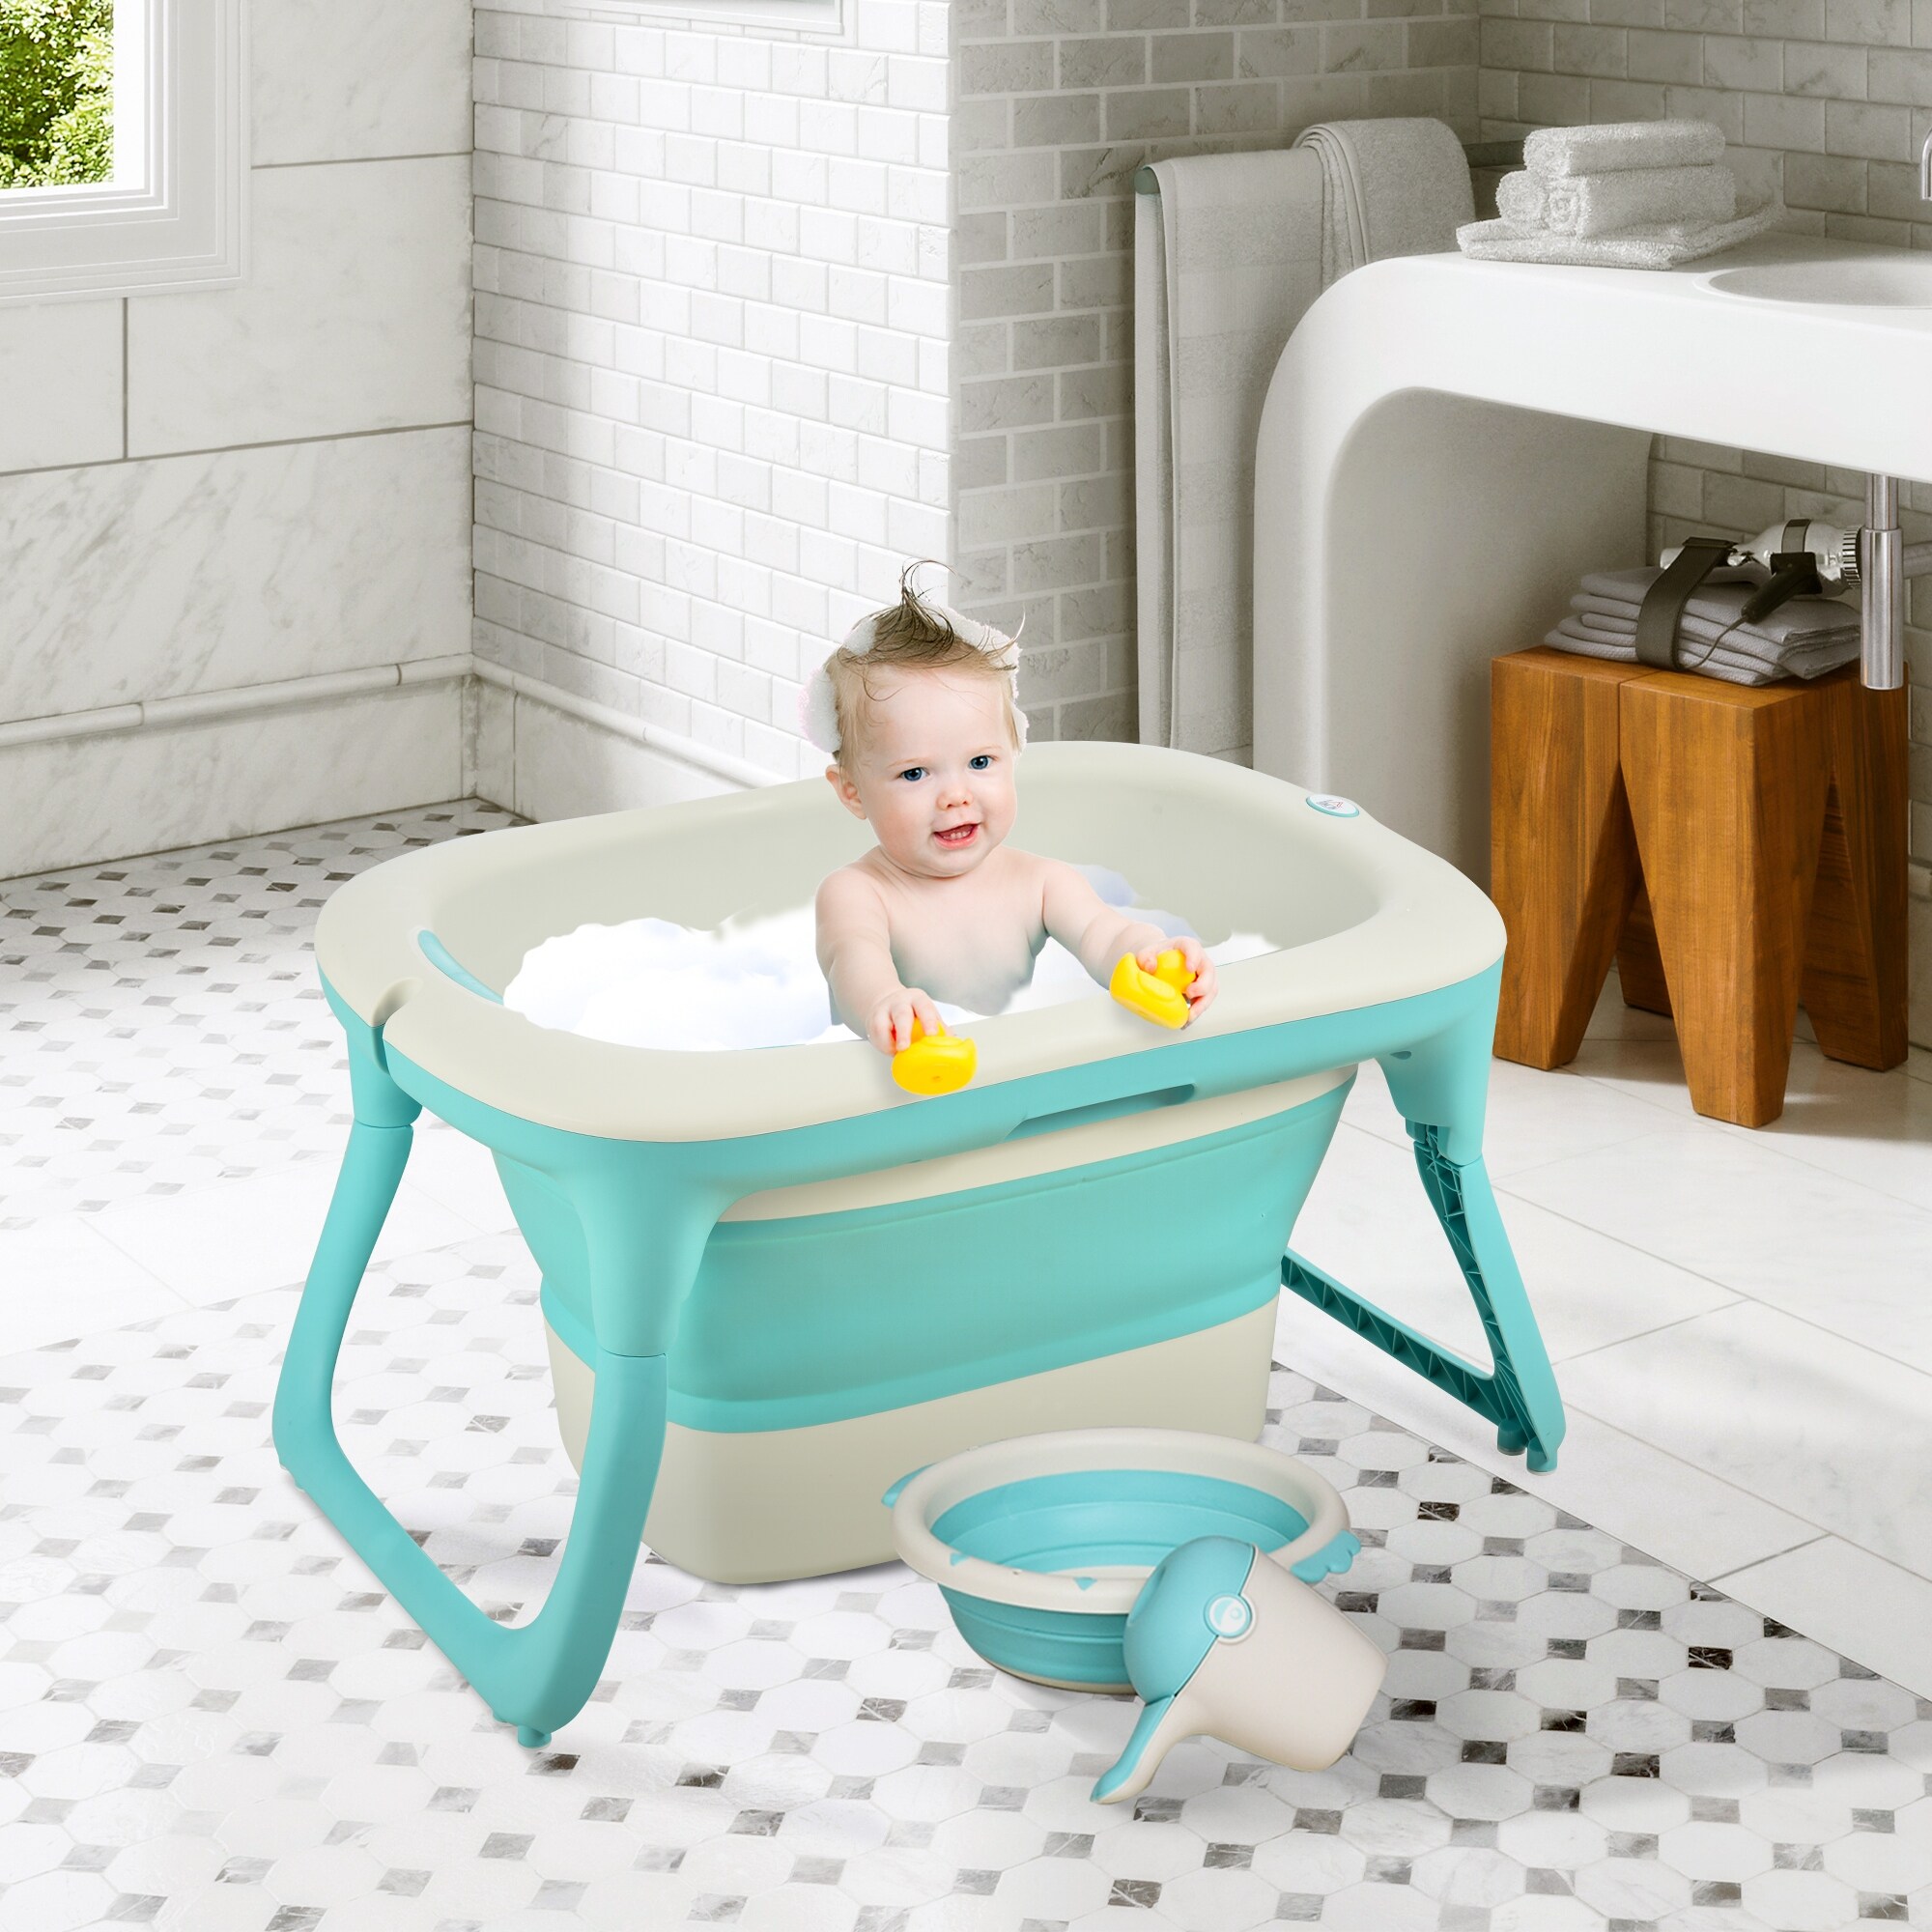 baby bath in tub